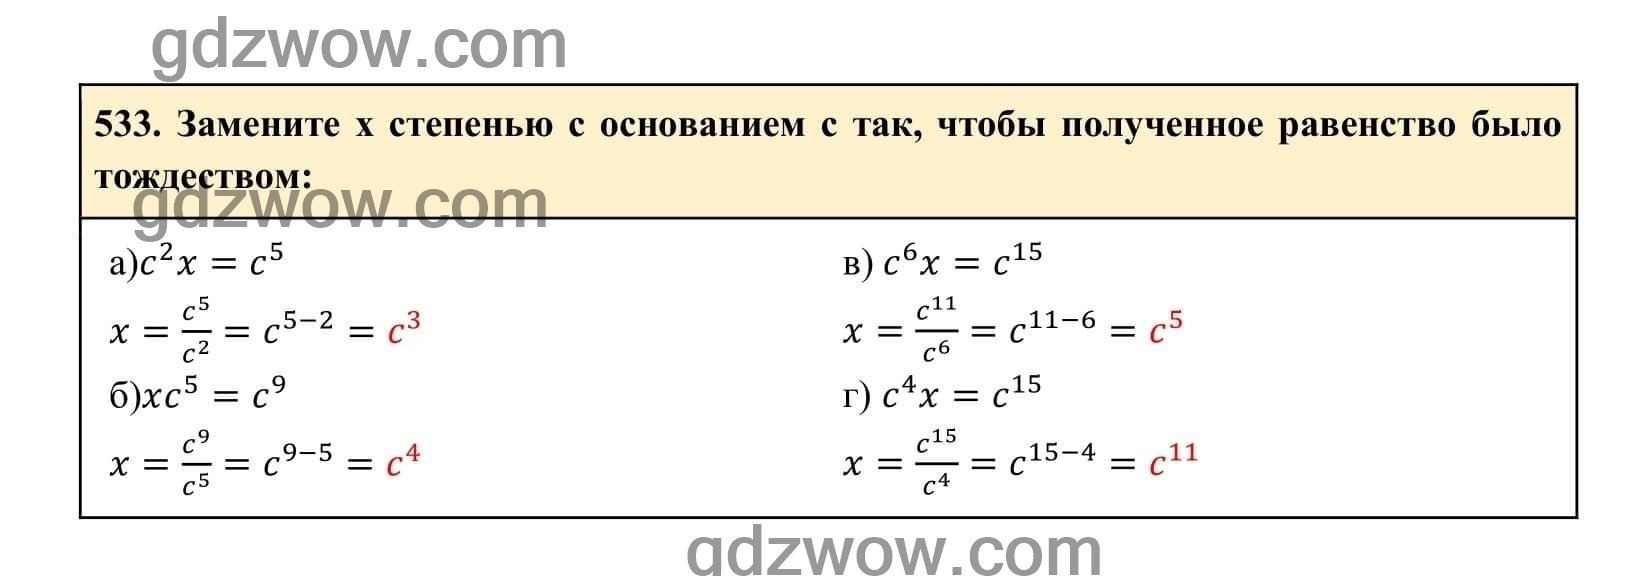 Упражнение 533 - ГДЗ по Алгебре 7 класс Учебник Макарычев (решебник) - GDZwow